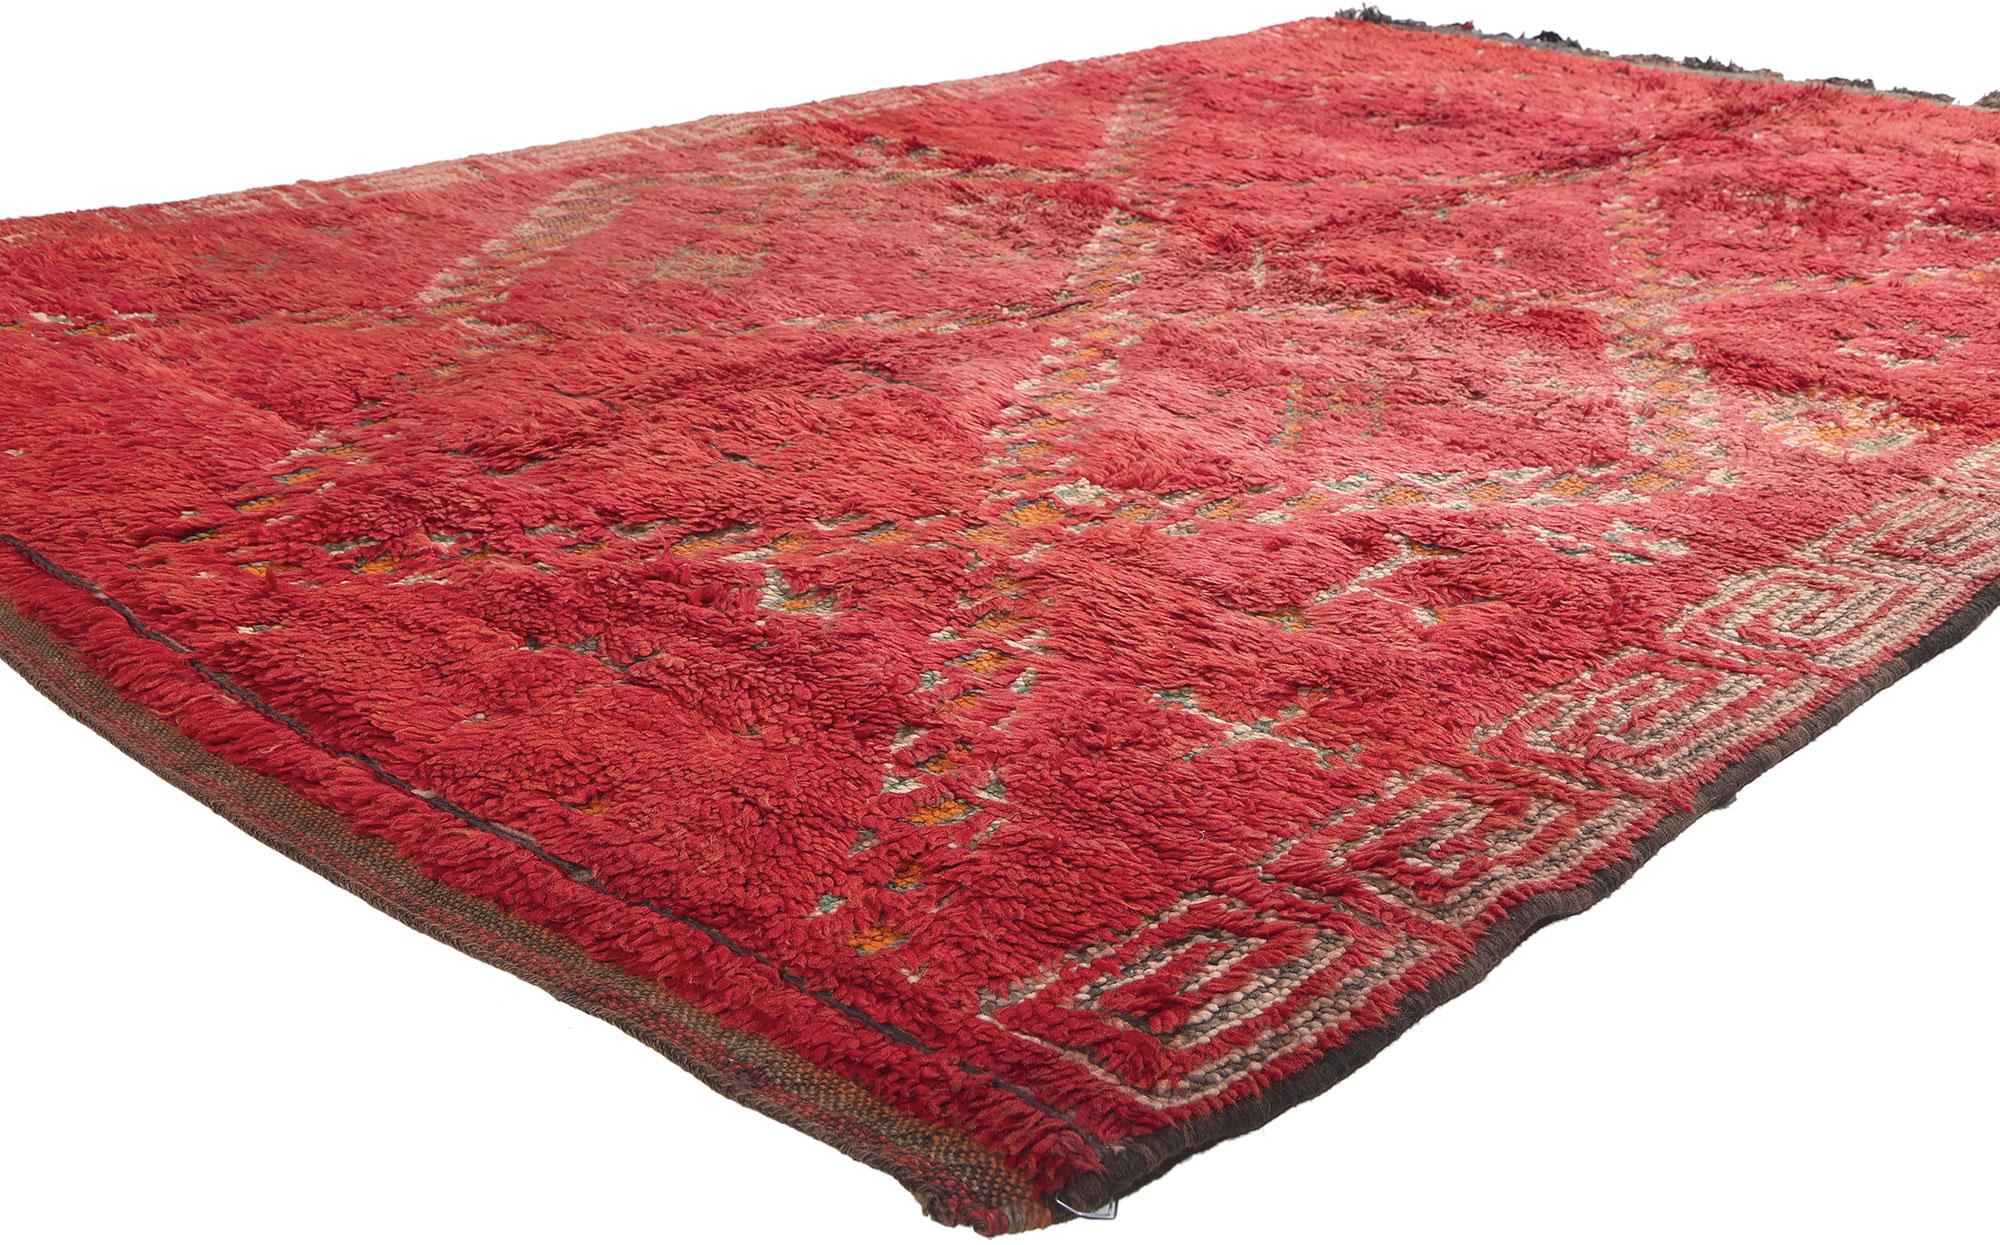 20153 Tapis marocain Beni MGuild rouge vintage, 05'09 x 08'04. Dans ce tapis marocain vintage Beni MGuild en laine nouée à la main, embrassez la fusion de l'esthétique bohème audacieuse et du style Midcentury Modern. Le design complexe des diamants